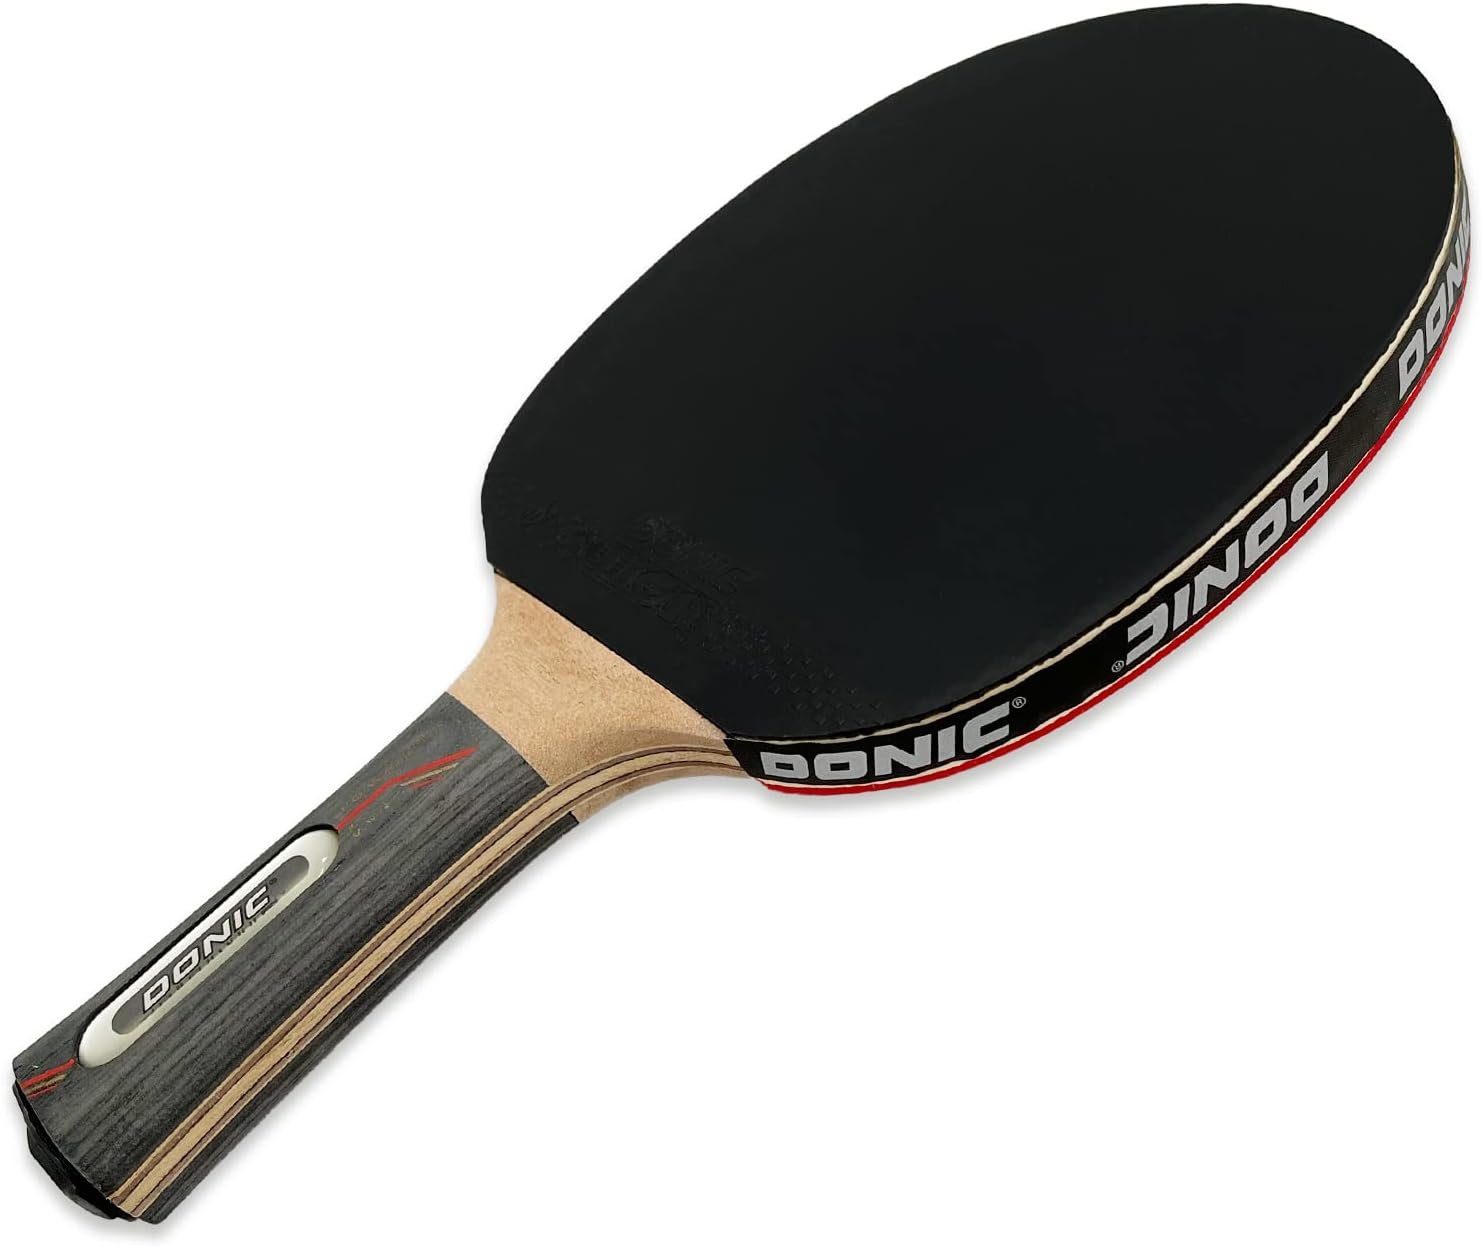 Tennis Donic-Schildkröt Bat Racket Waldner Tischtennis 5000, Tischtennisschläger Table Schläger